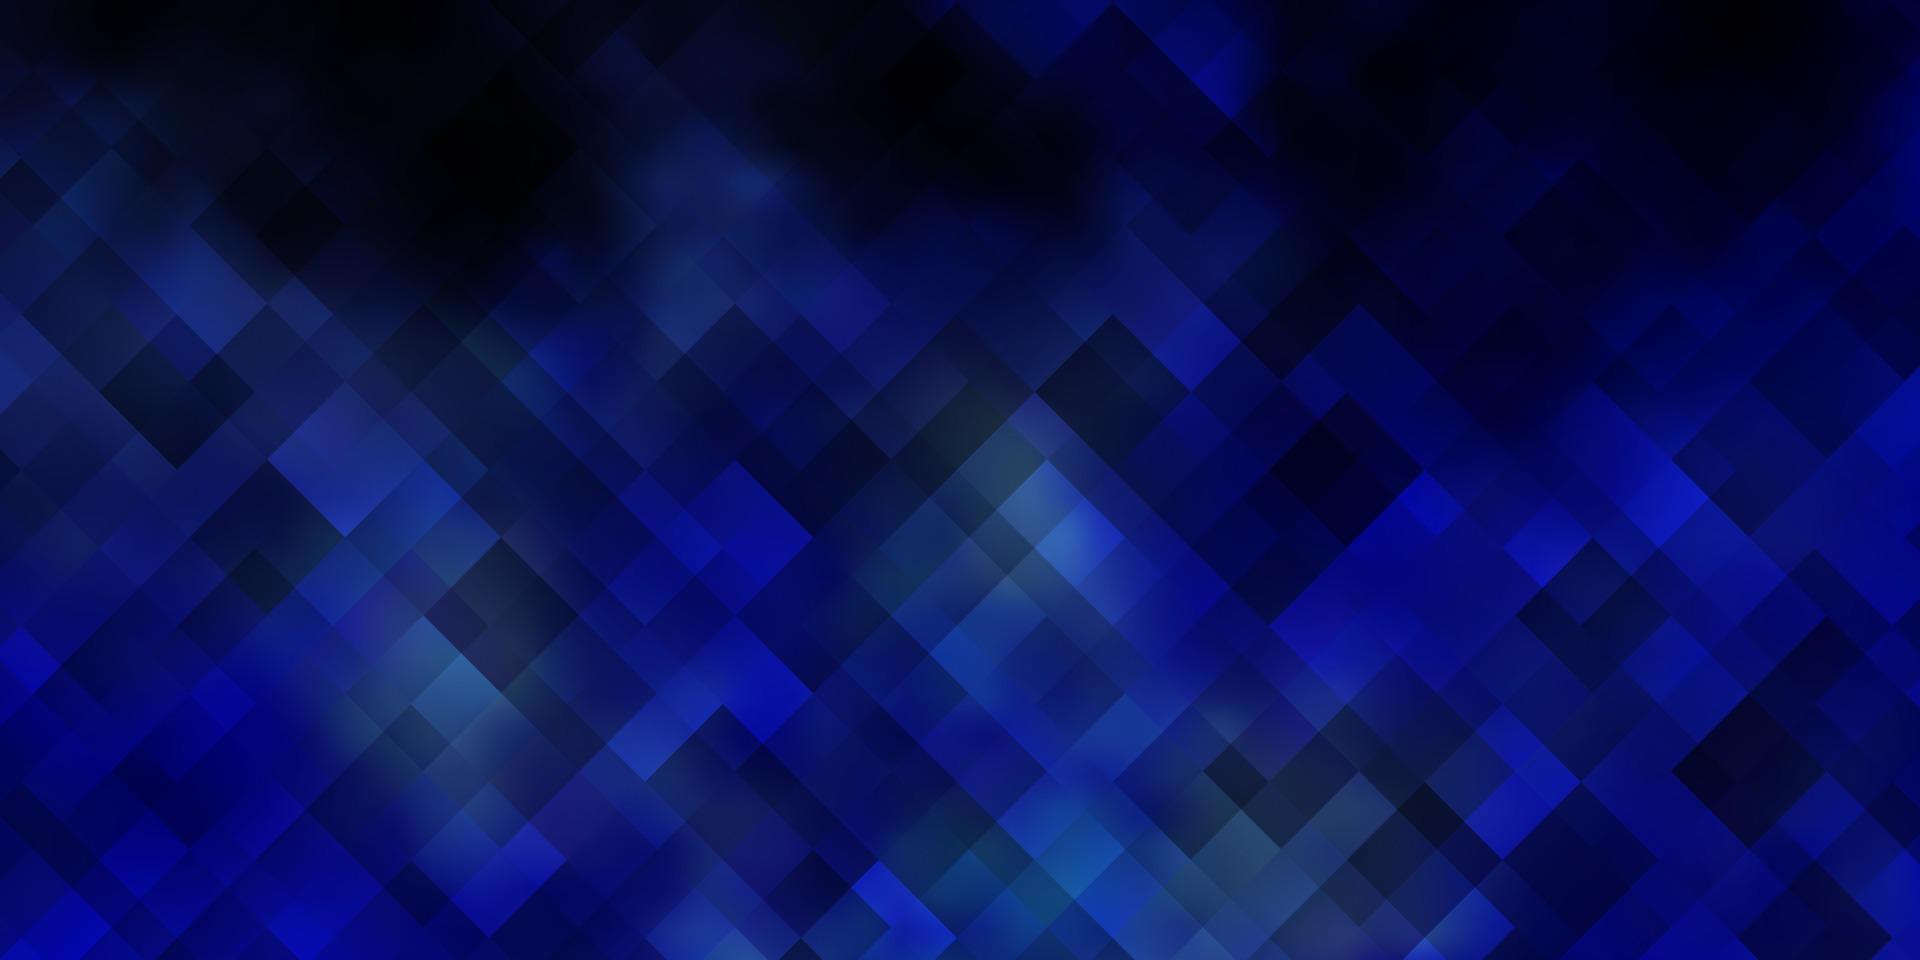 sfondo vettoriale blu chiaro in stile poligonale.